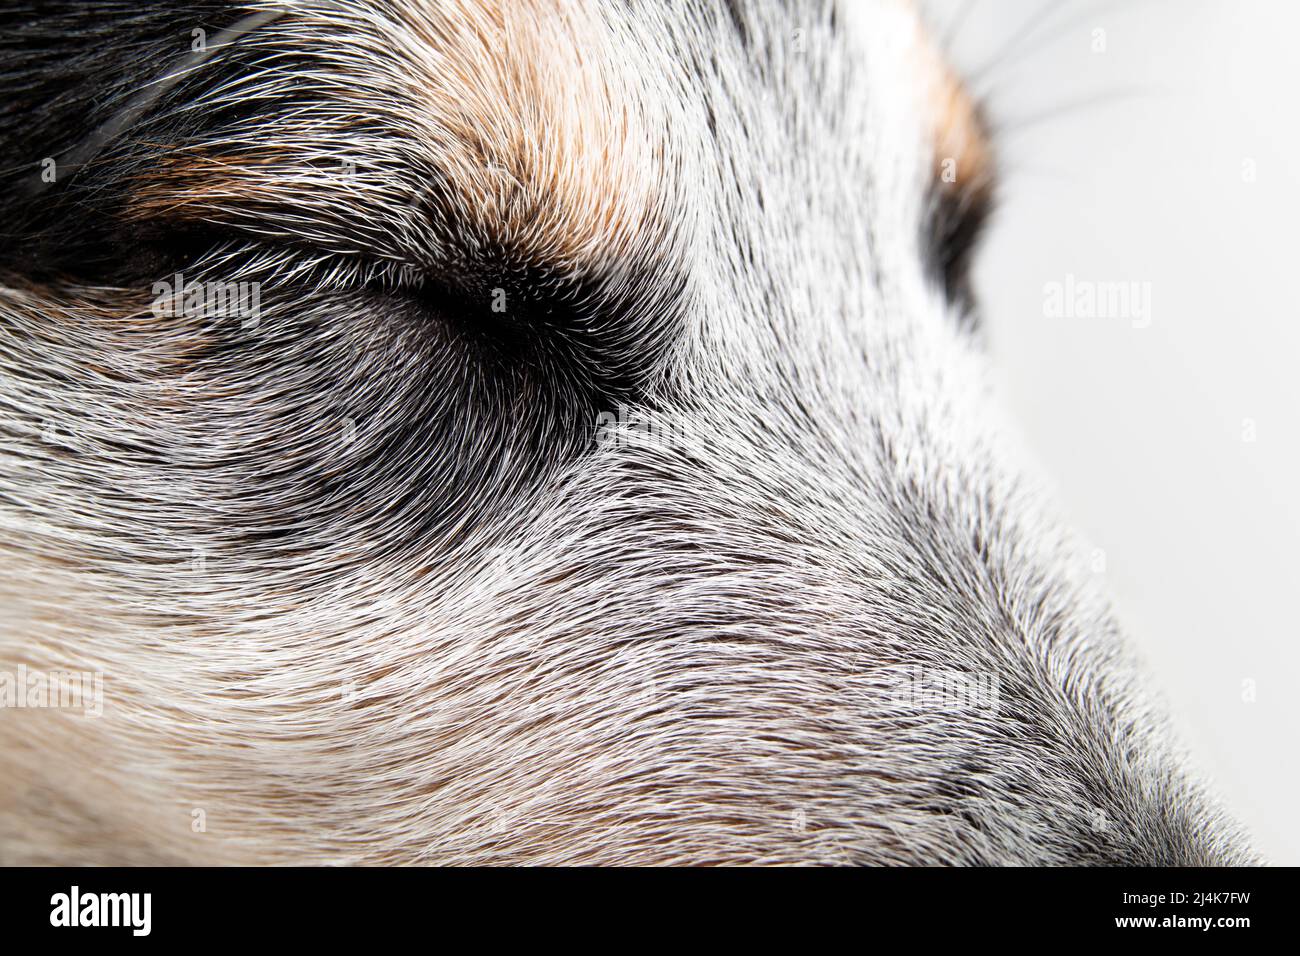 Lindo perrito durmiendo o siesta, cerca. Vista lateral de perro blanco y negro con ojos cerrados. 9 semanas de edad macho azul heeler pup. Ambiente tranquilo. Foto de stock